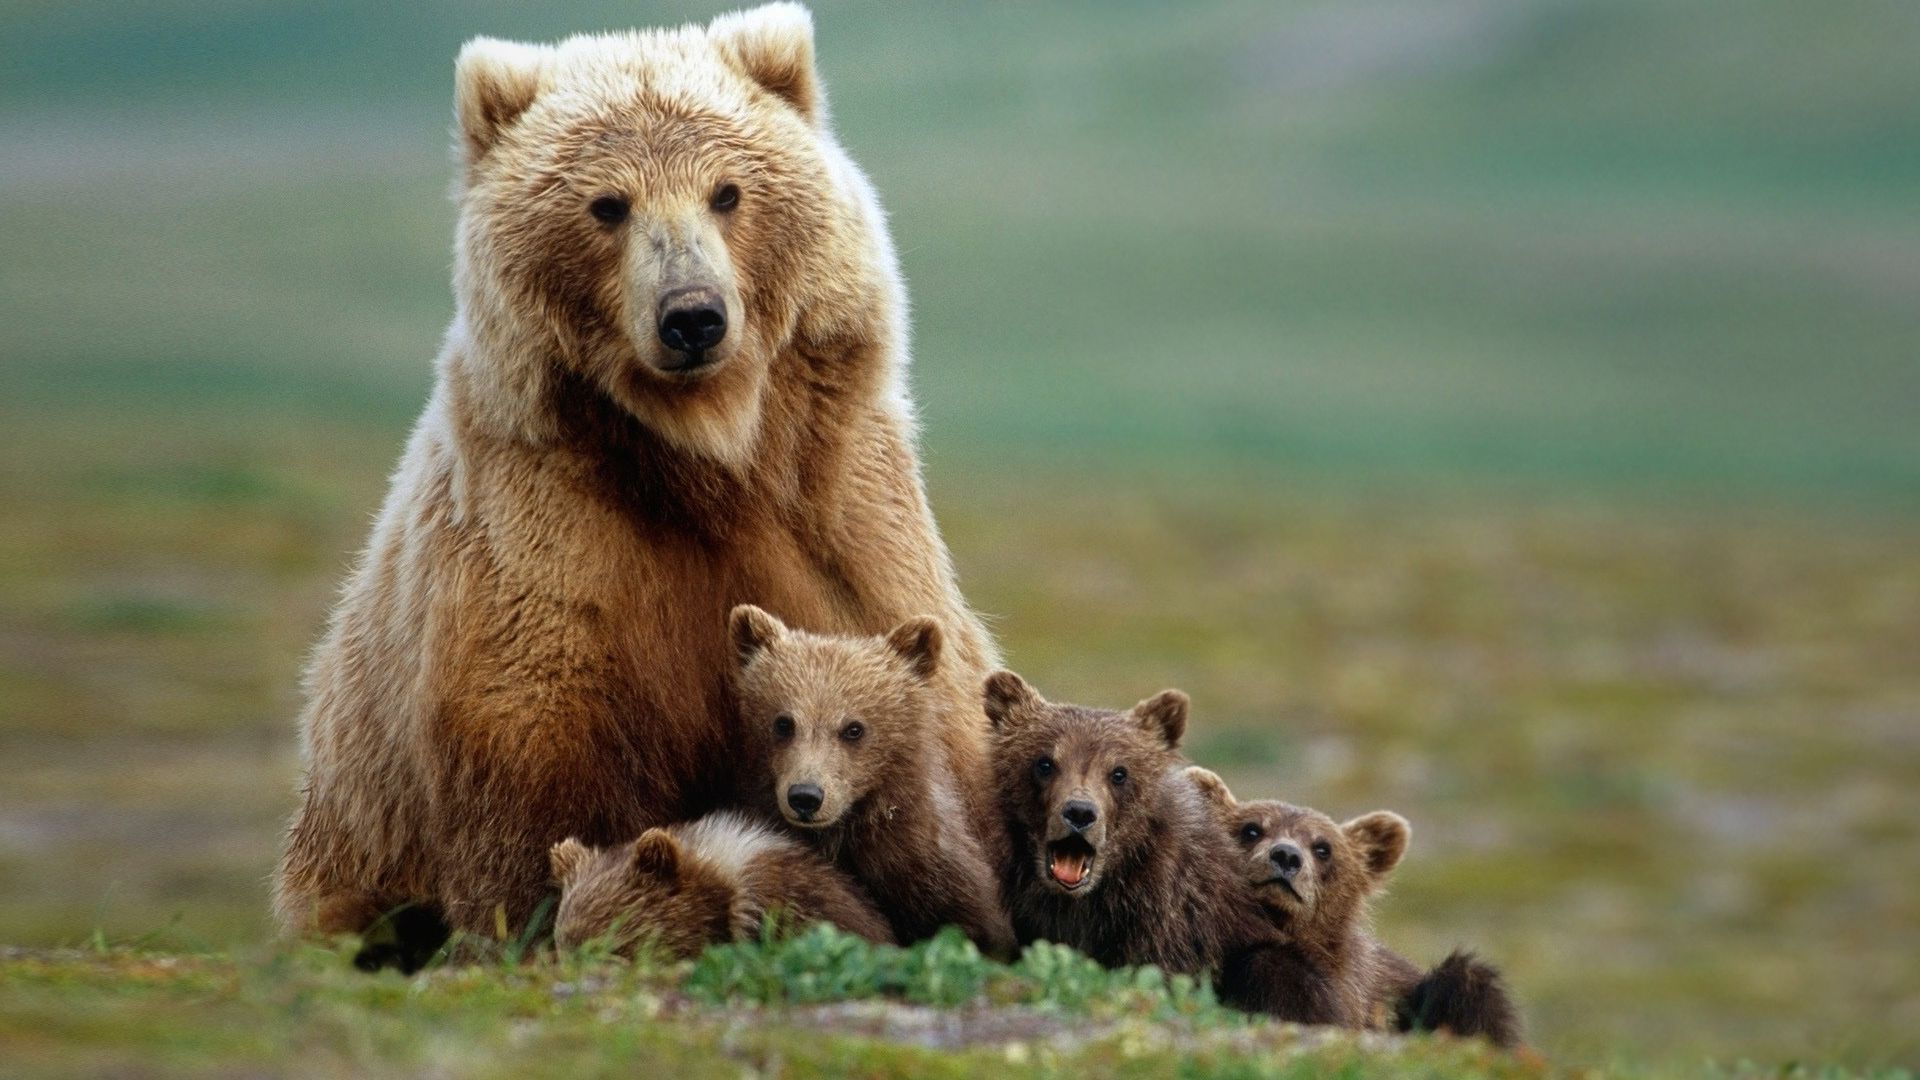 sfondi barba hd,orso bruno,animale terrestre,orso grizzly,orso,natura